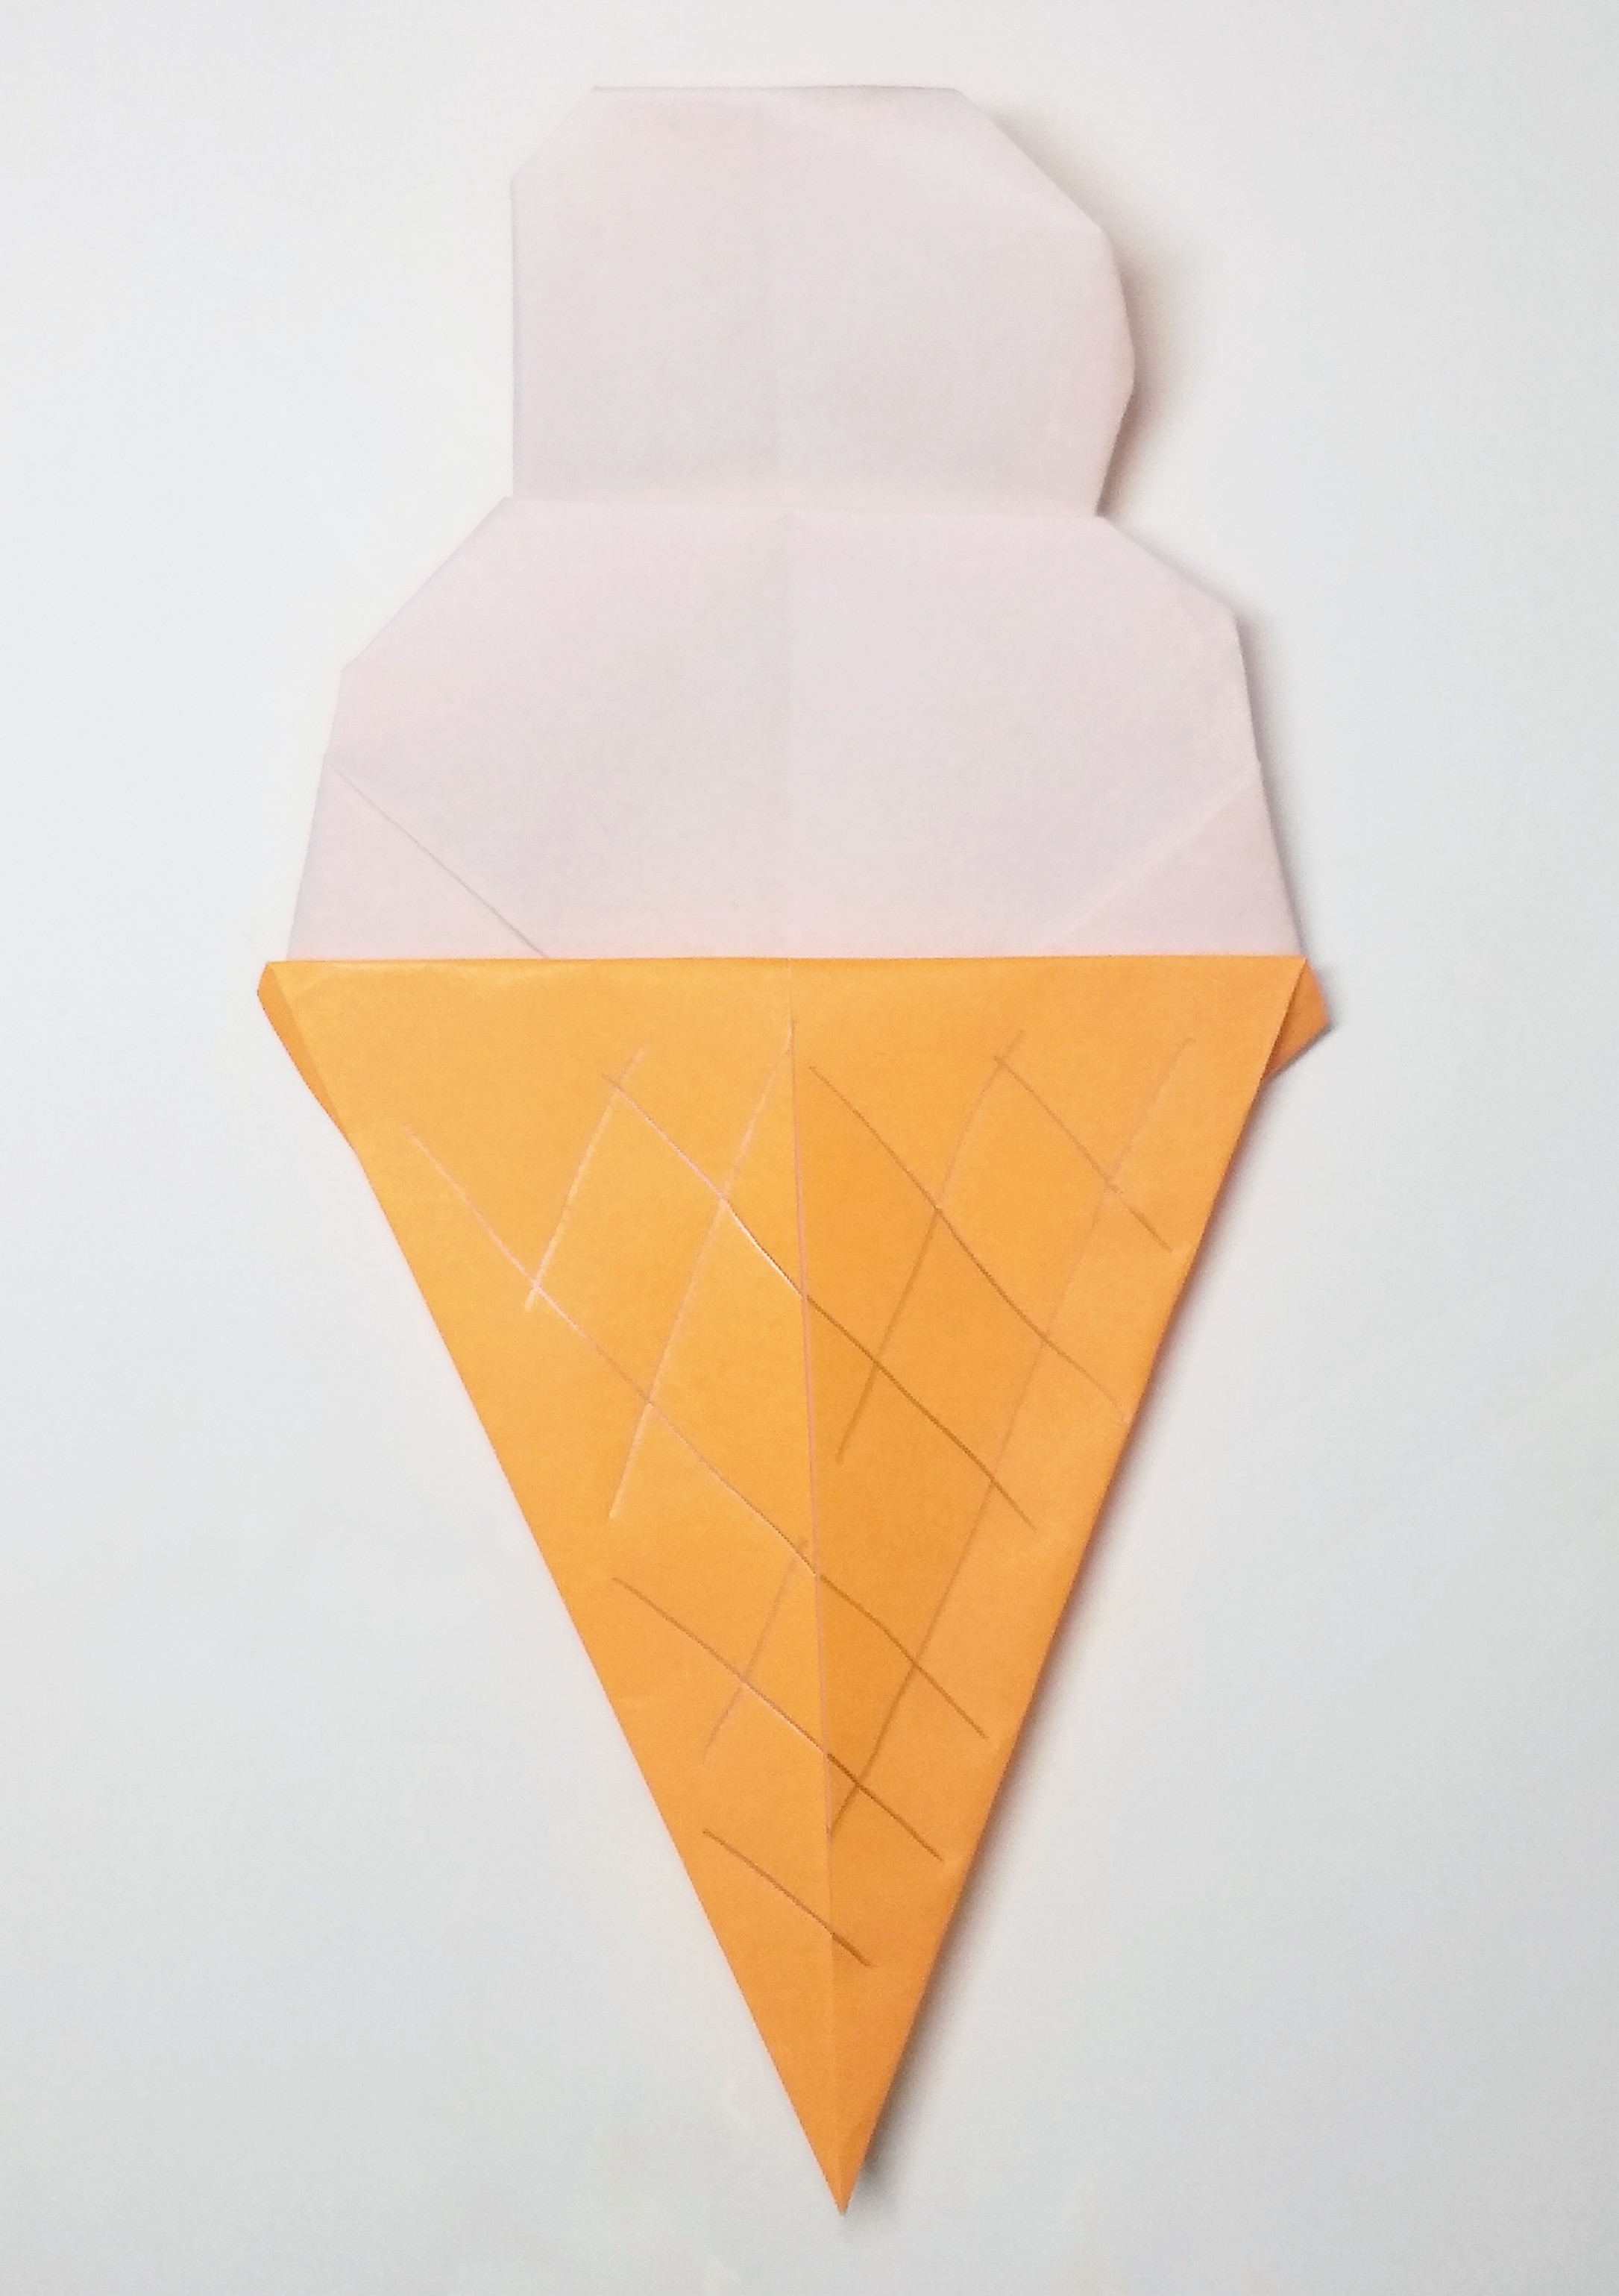 折り紙でアイスクリームを折ってみよう